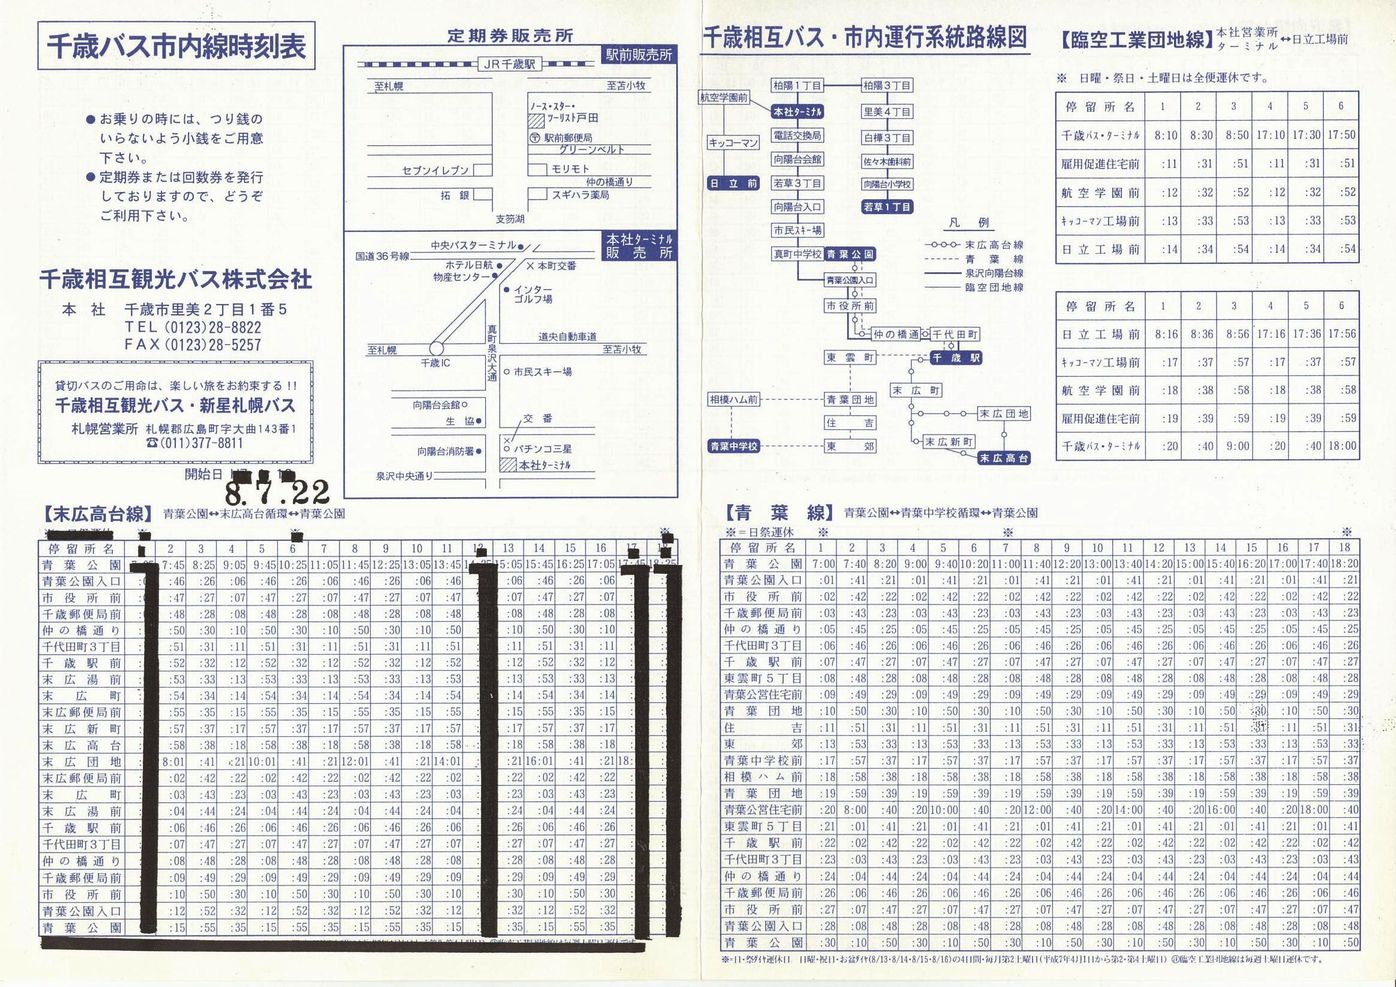 1996-07-22改正_千歳相互観光バス_時刻表表面